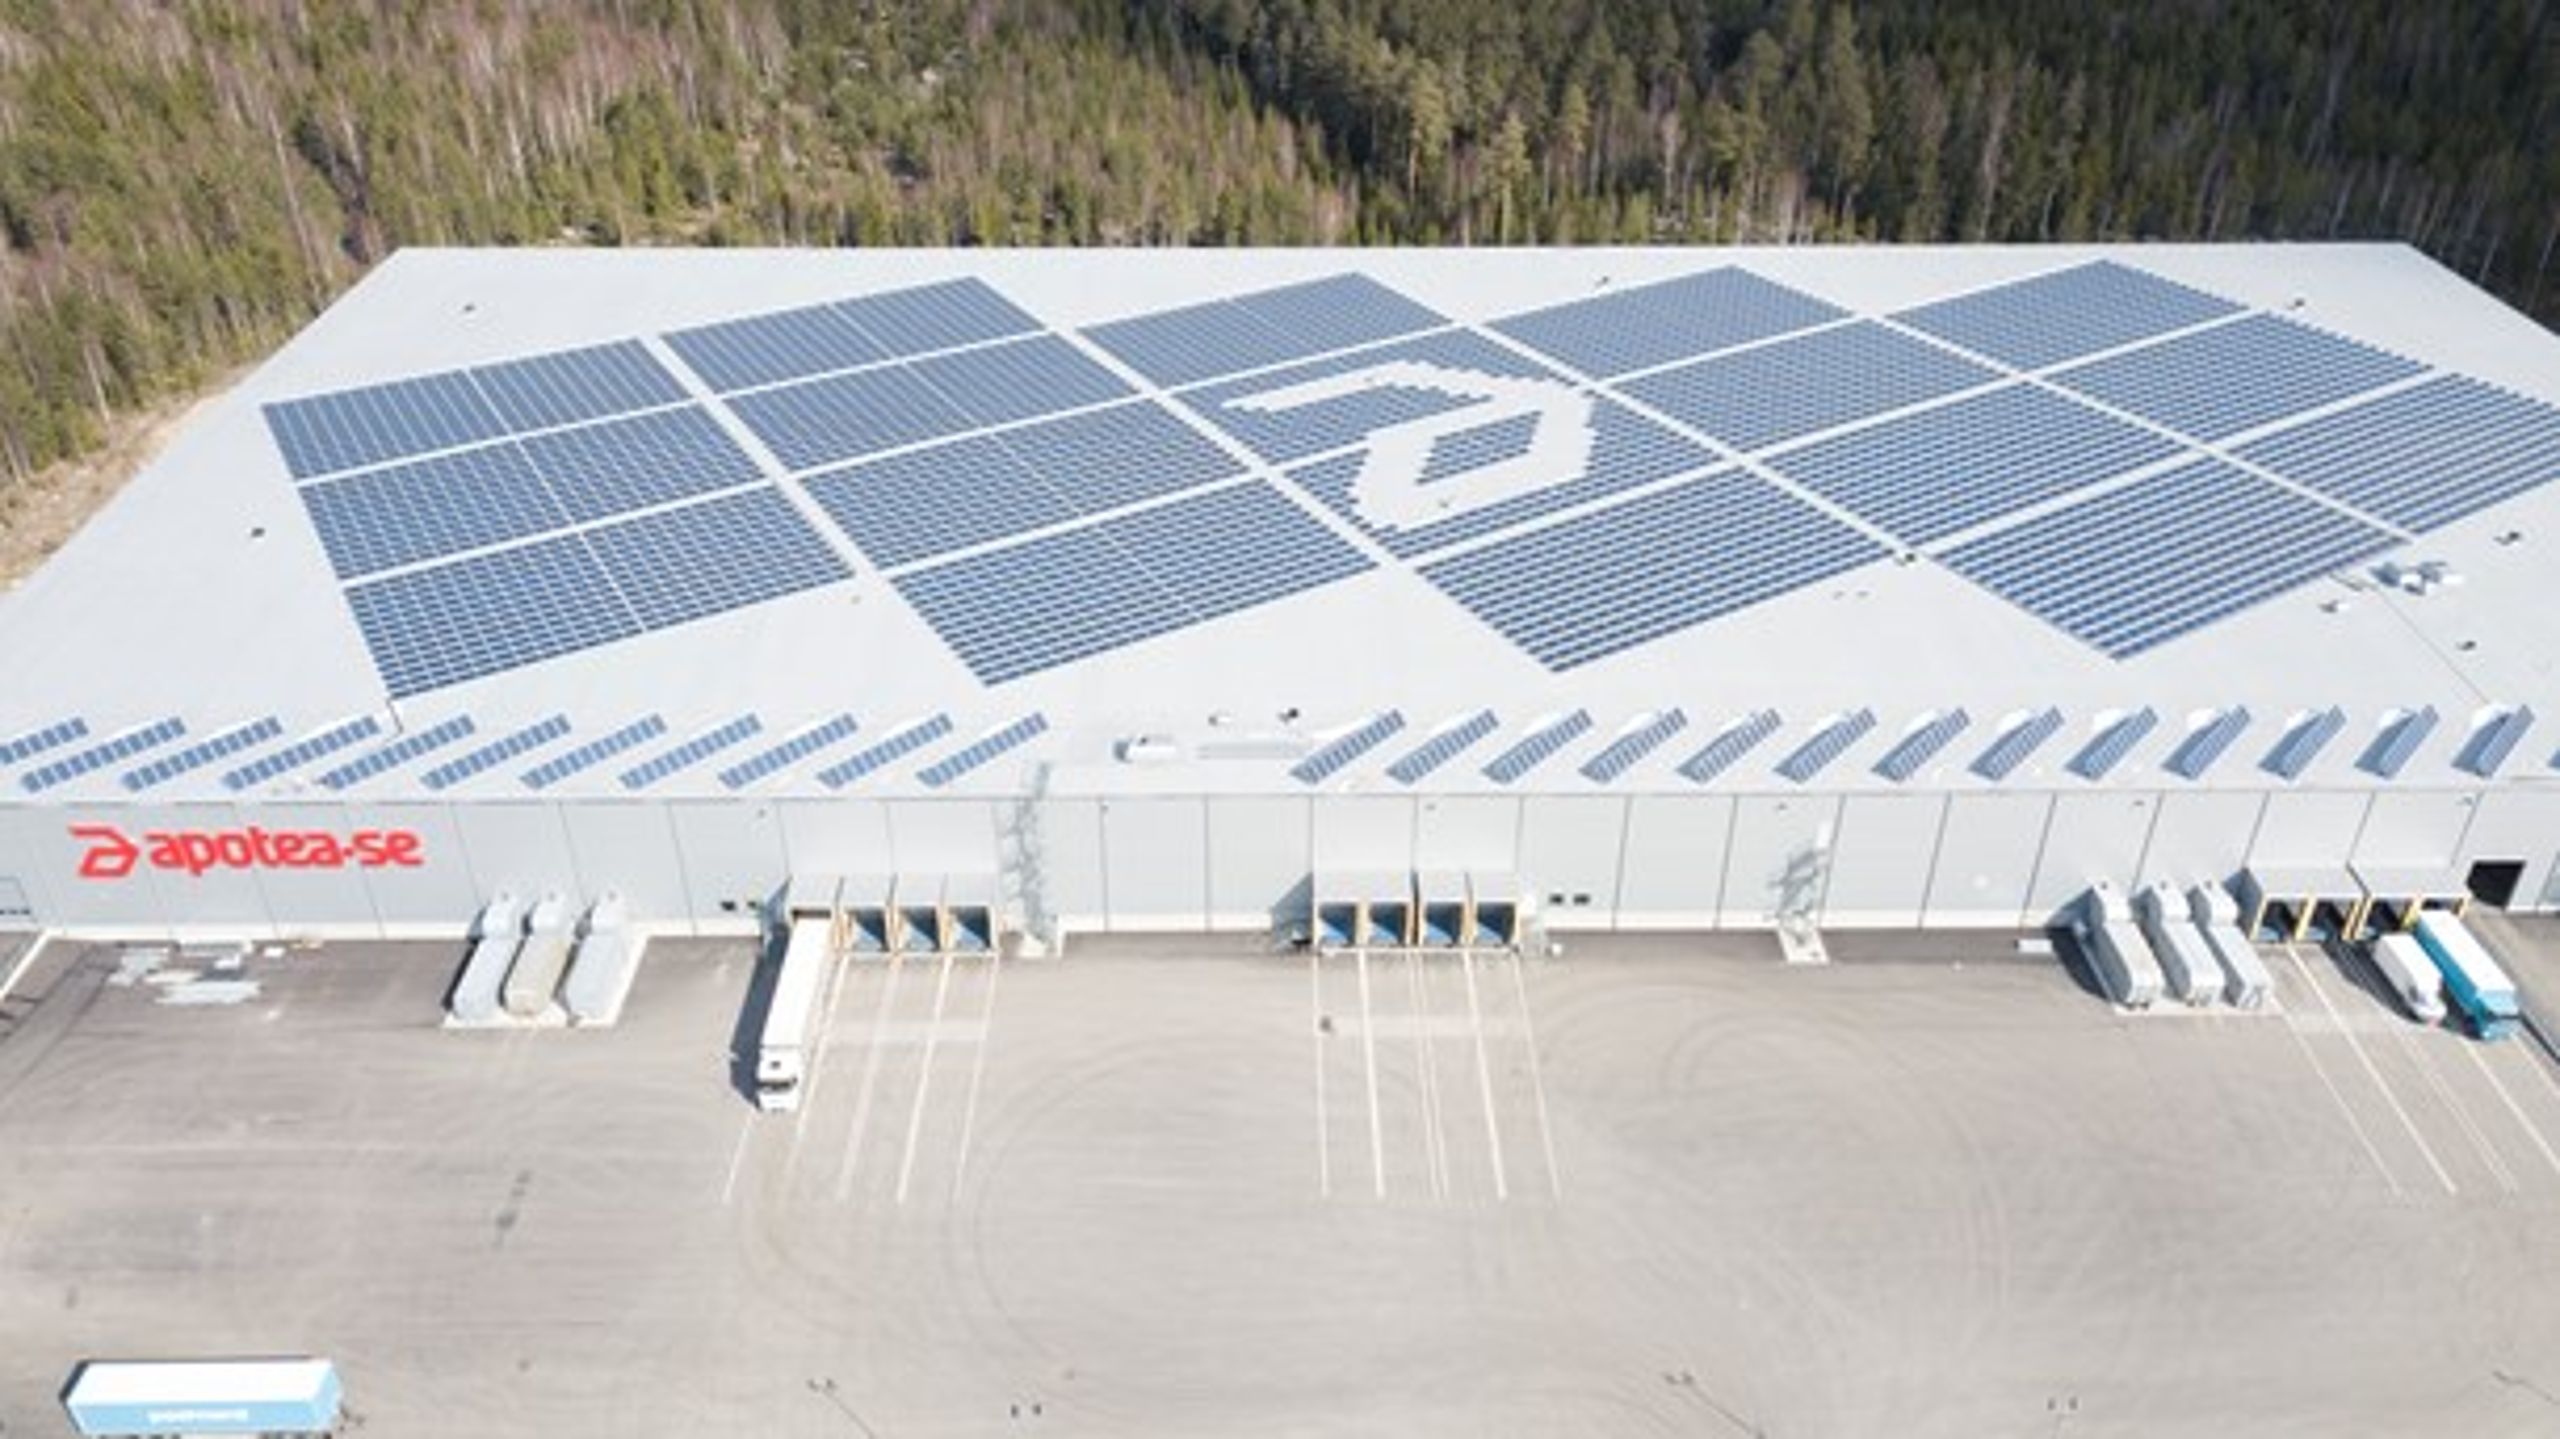 Apoteas lager i Morgongåva. På taket finns 5 500 solcellsmoduler som gör lagret självförsörjande på el. "I dag får du betala skatt om din anläggning är för stor, även om du använder all elen själv."